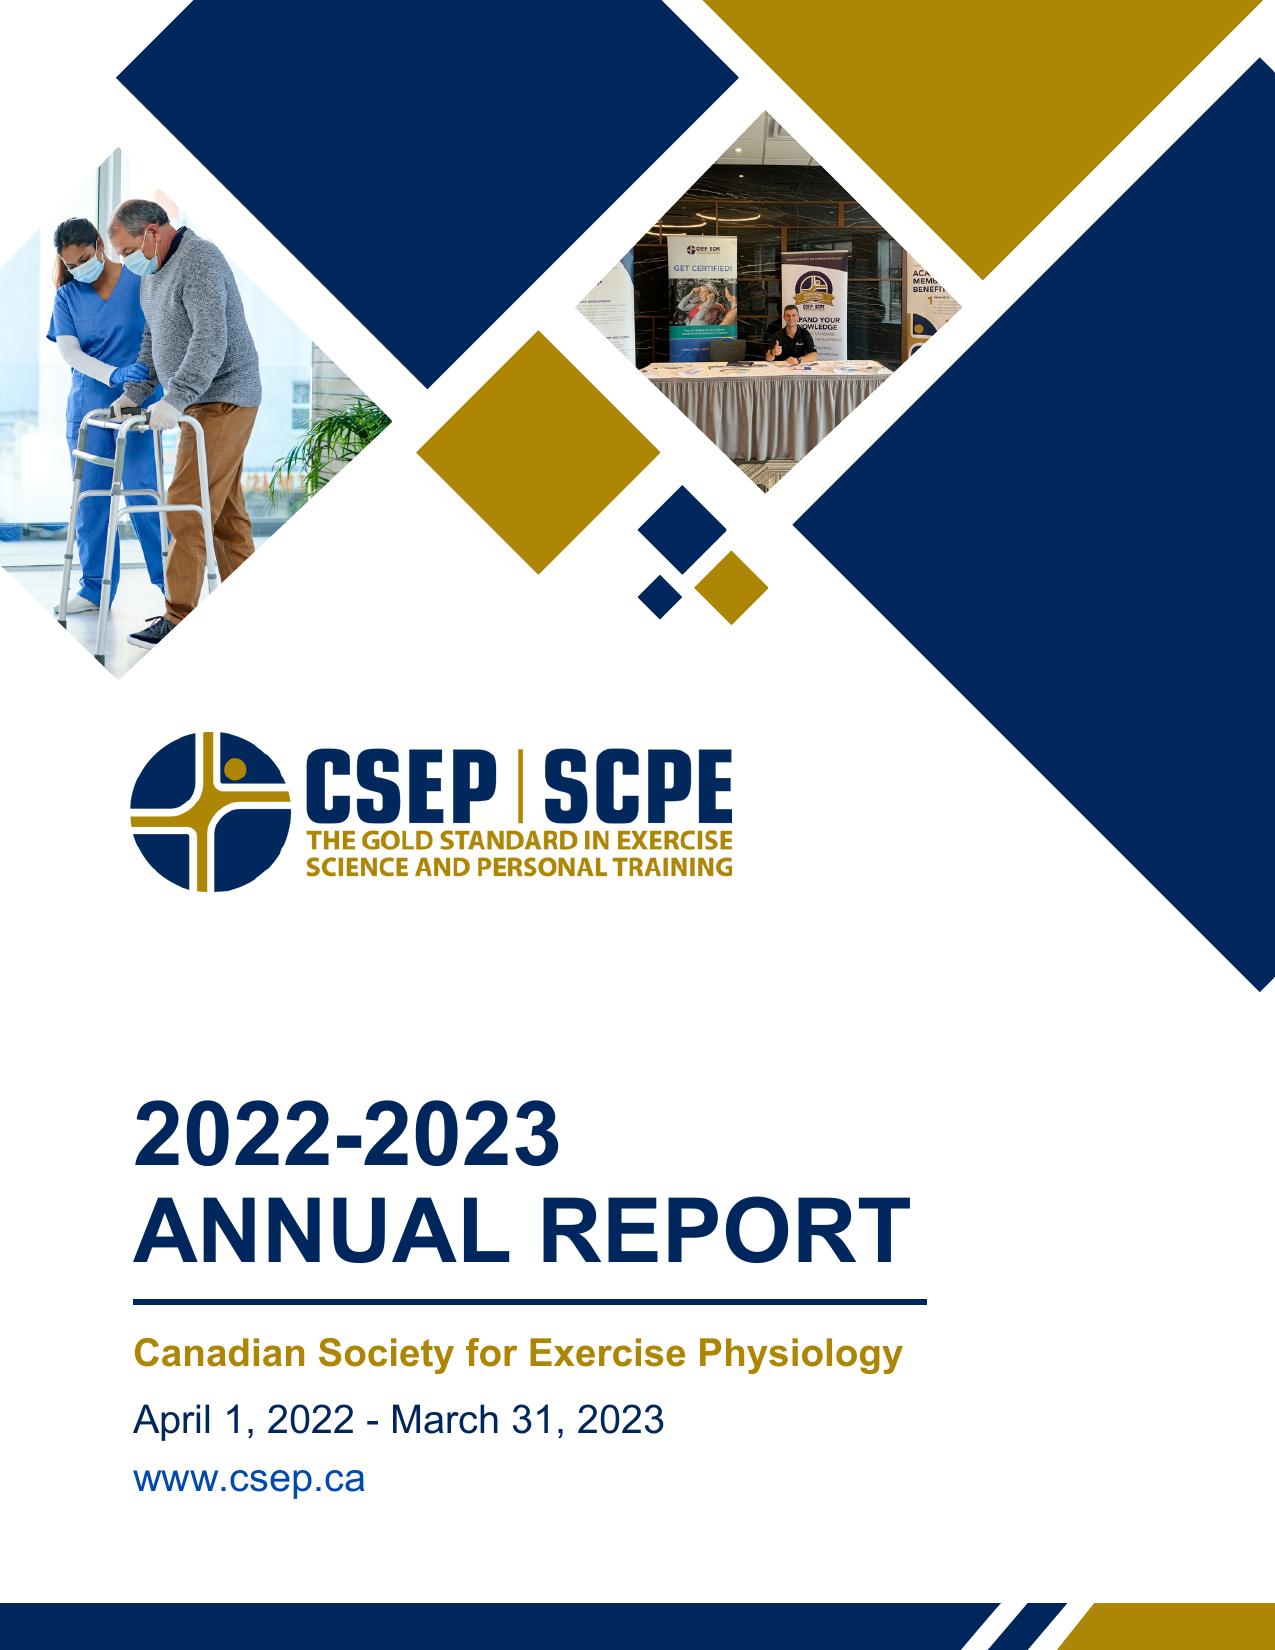 CSEP 2023 Annual Report